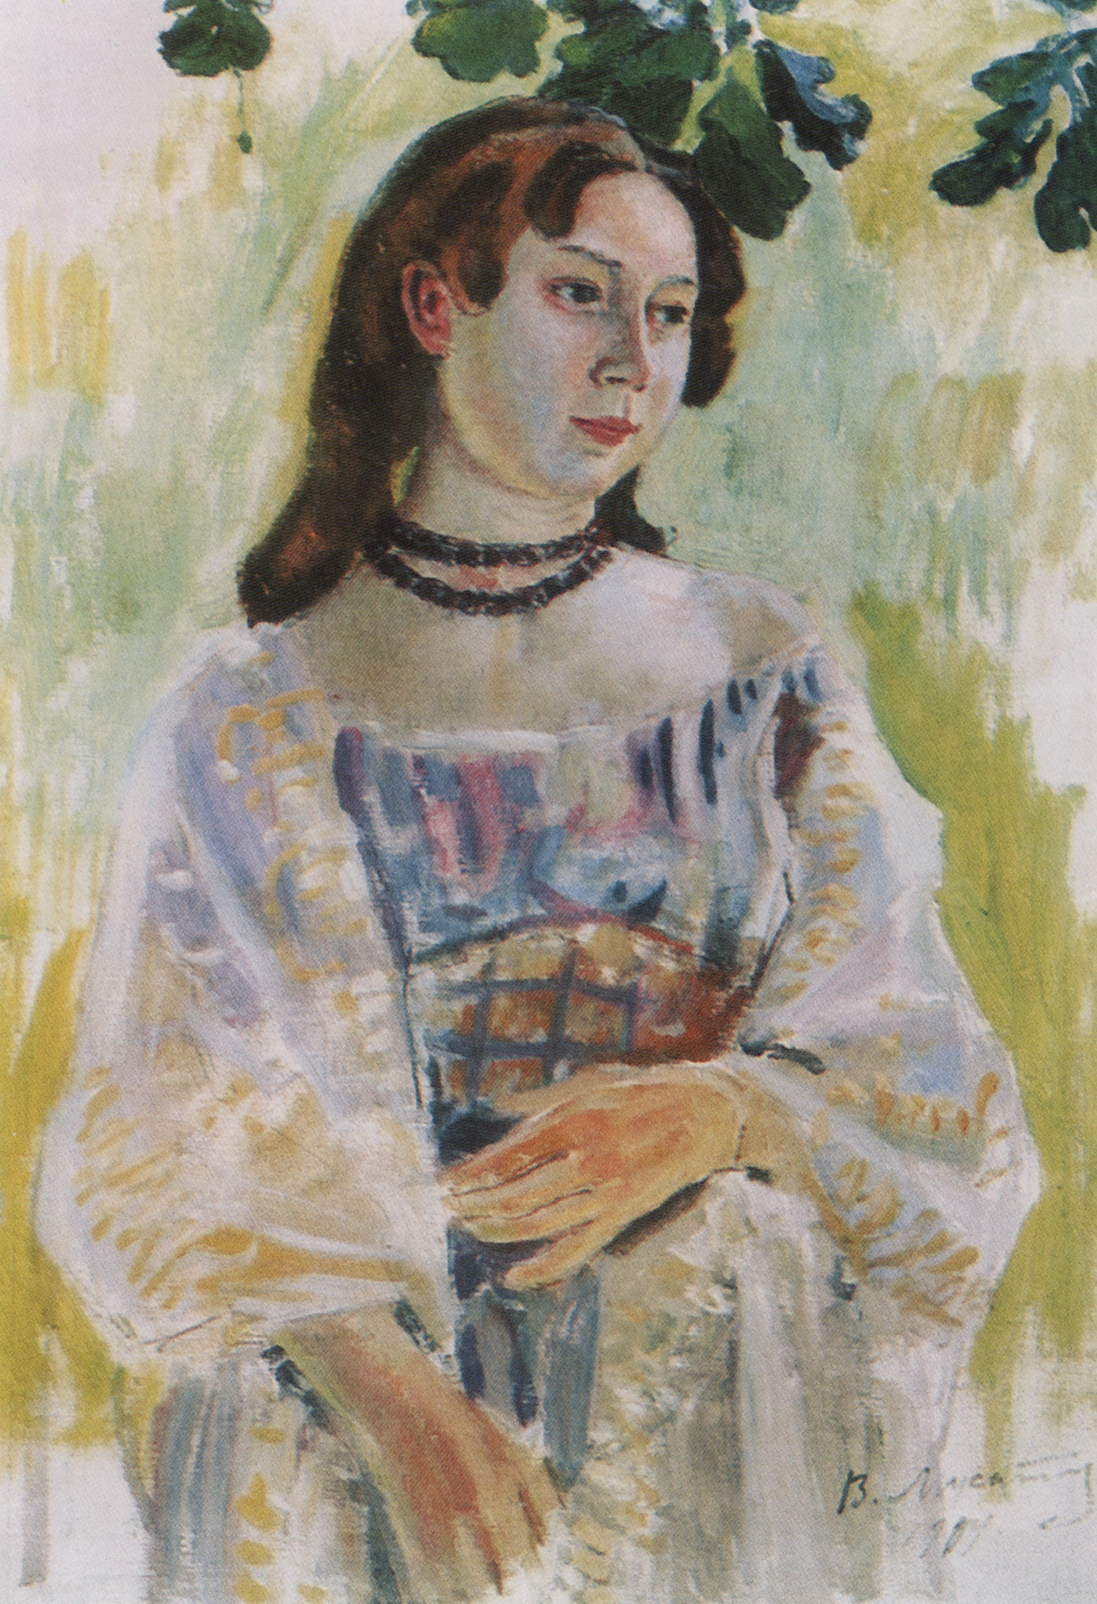 Борисов-Мусатов. Девушка в ожерелье. 1904